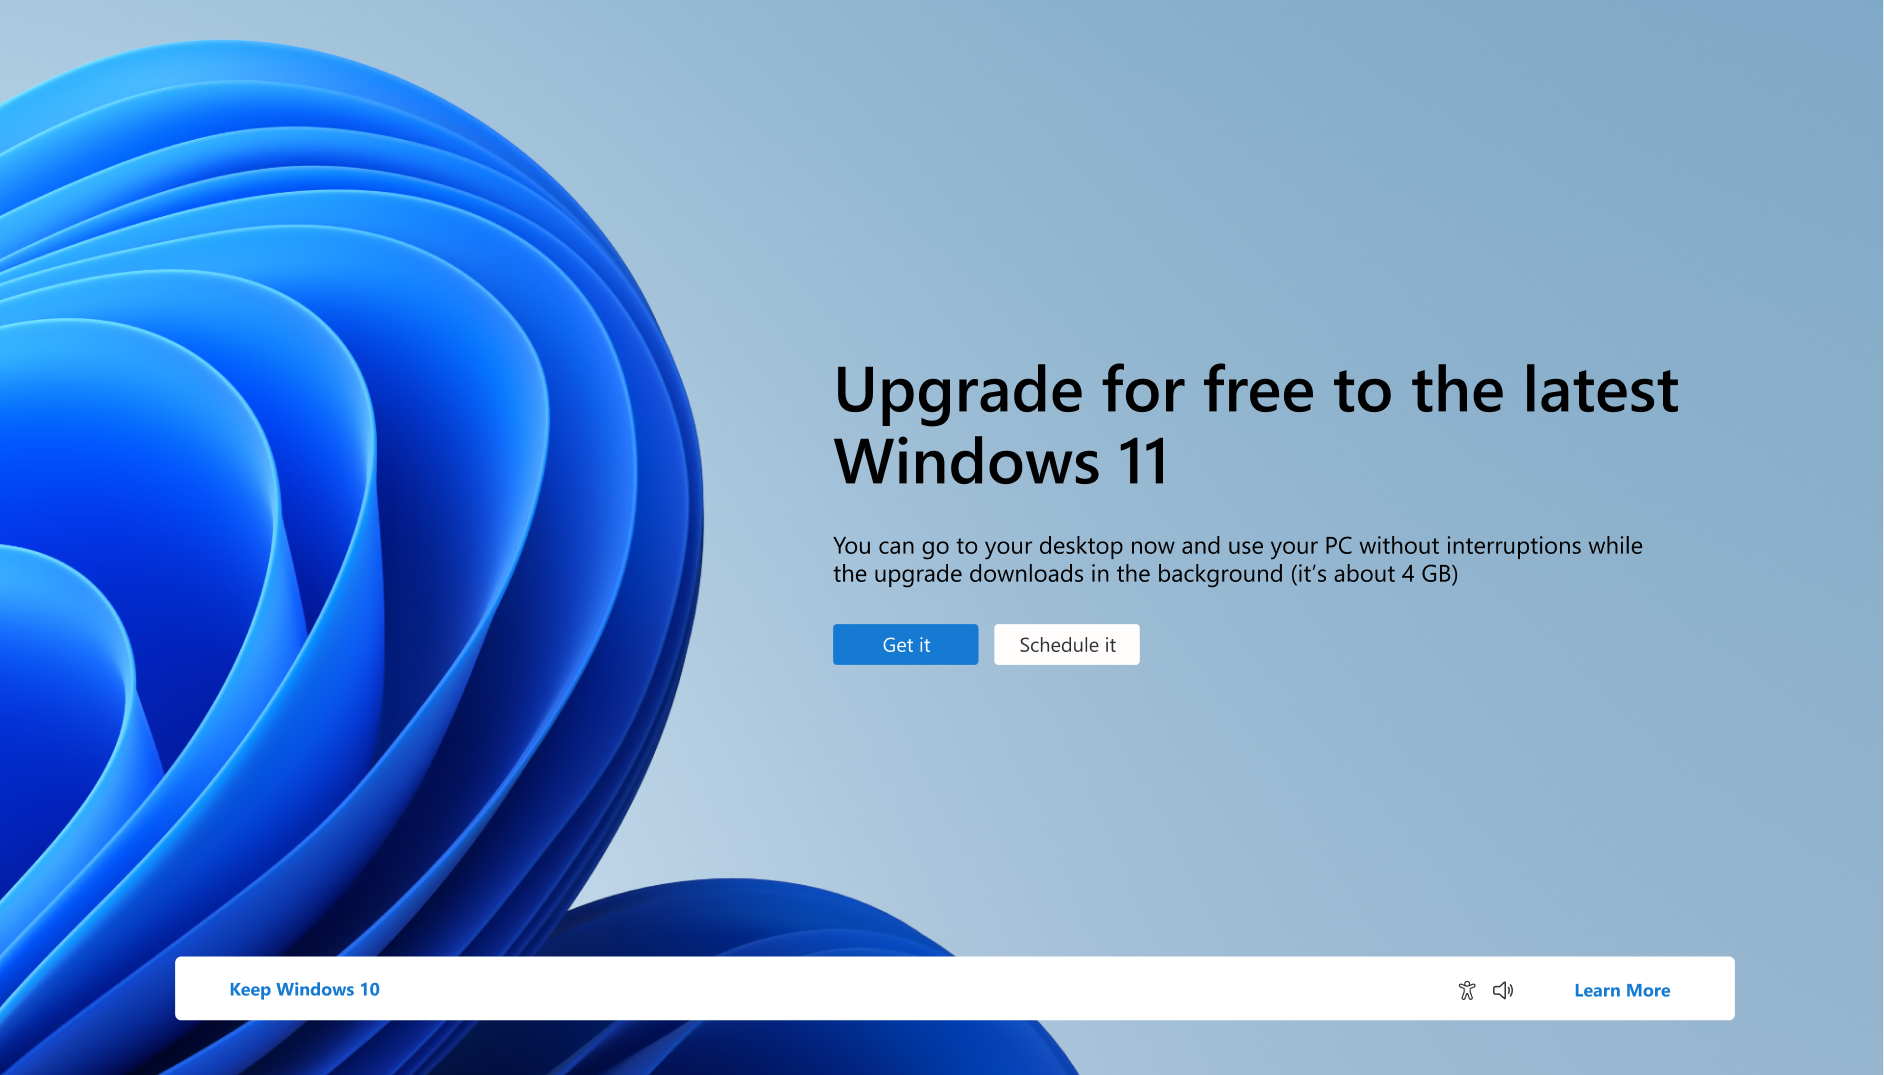 Schermopname van de melding waarin staat dat de pc gratis kan upgraden naar Windows 11.